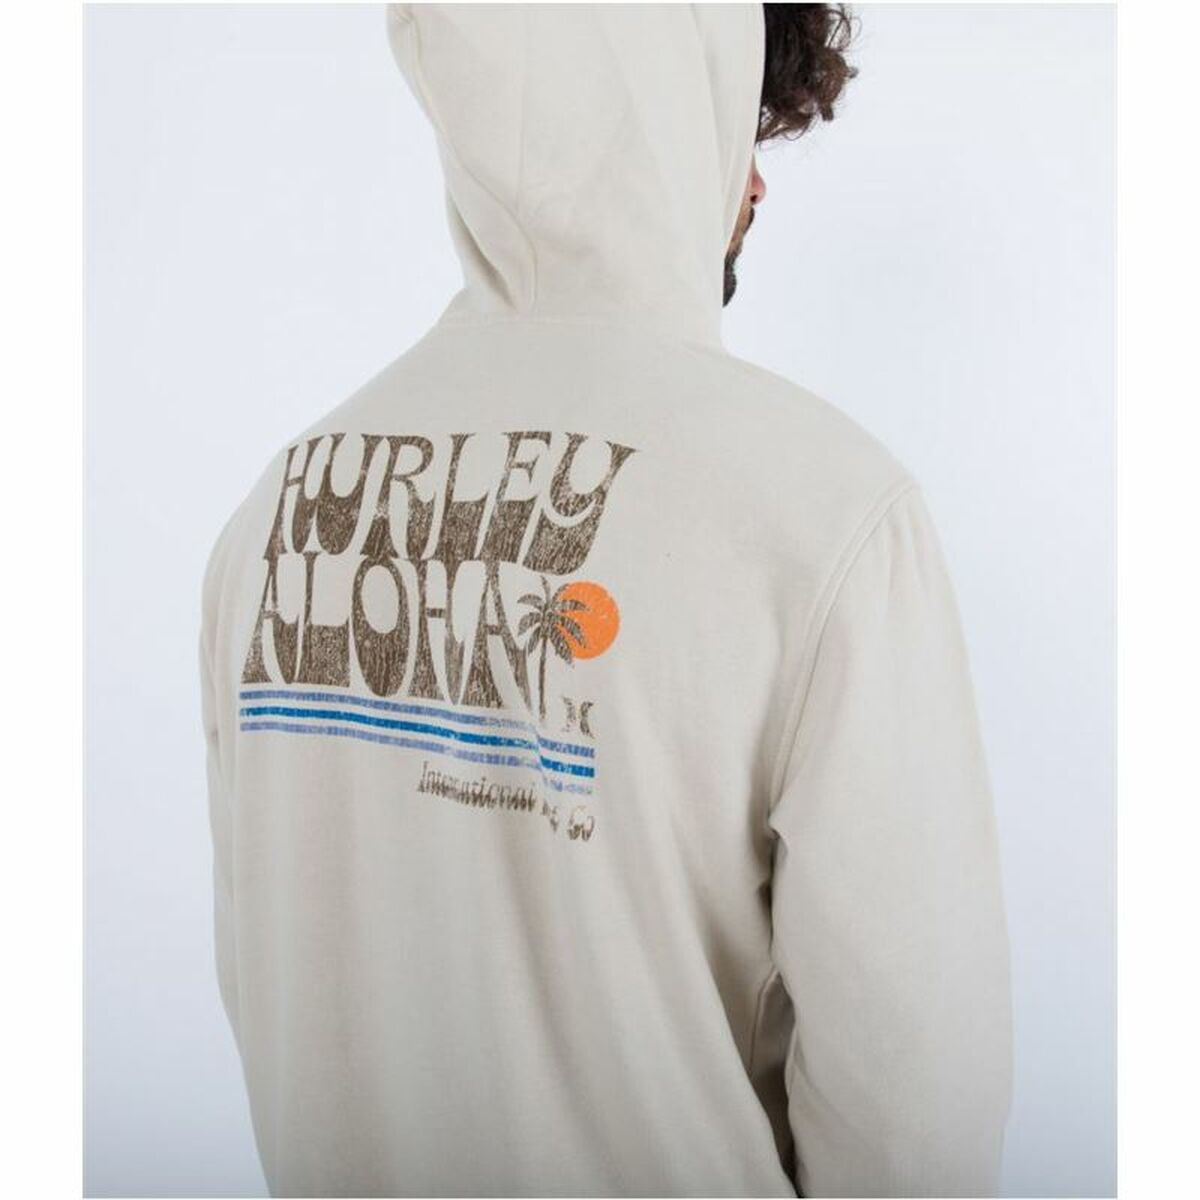 Kaufe Herren Sweater mit Kapuze Hurley Beige bei AWK Flagship um € 65.00